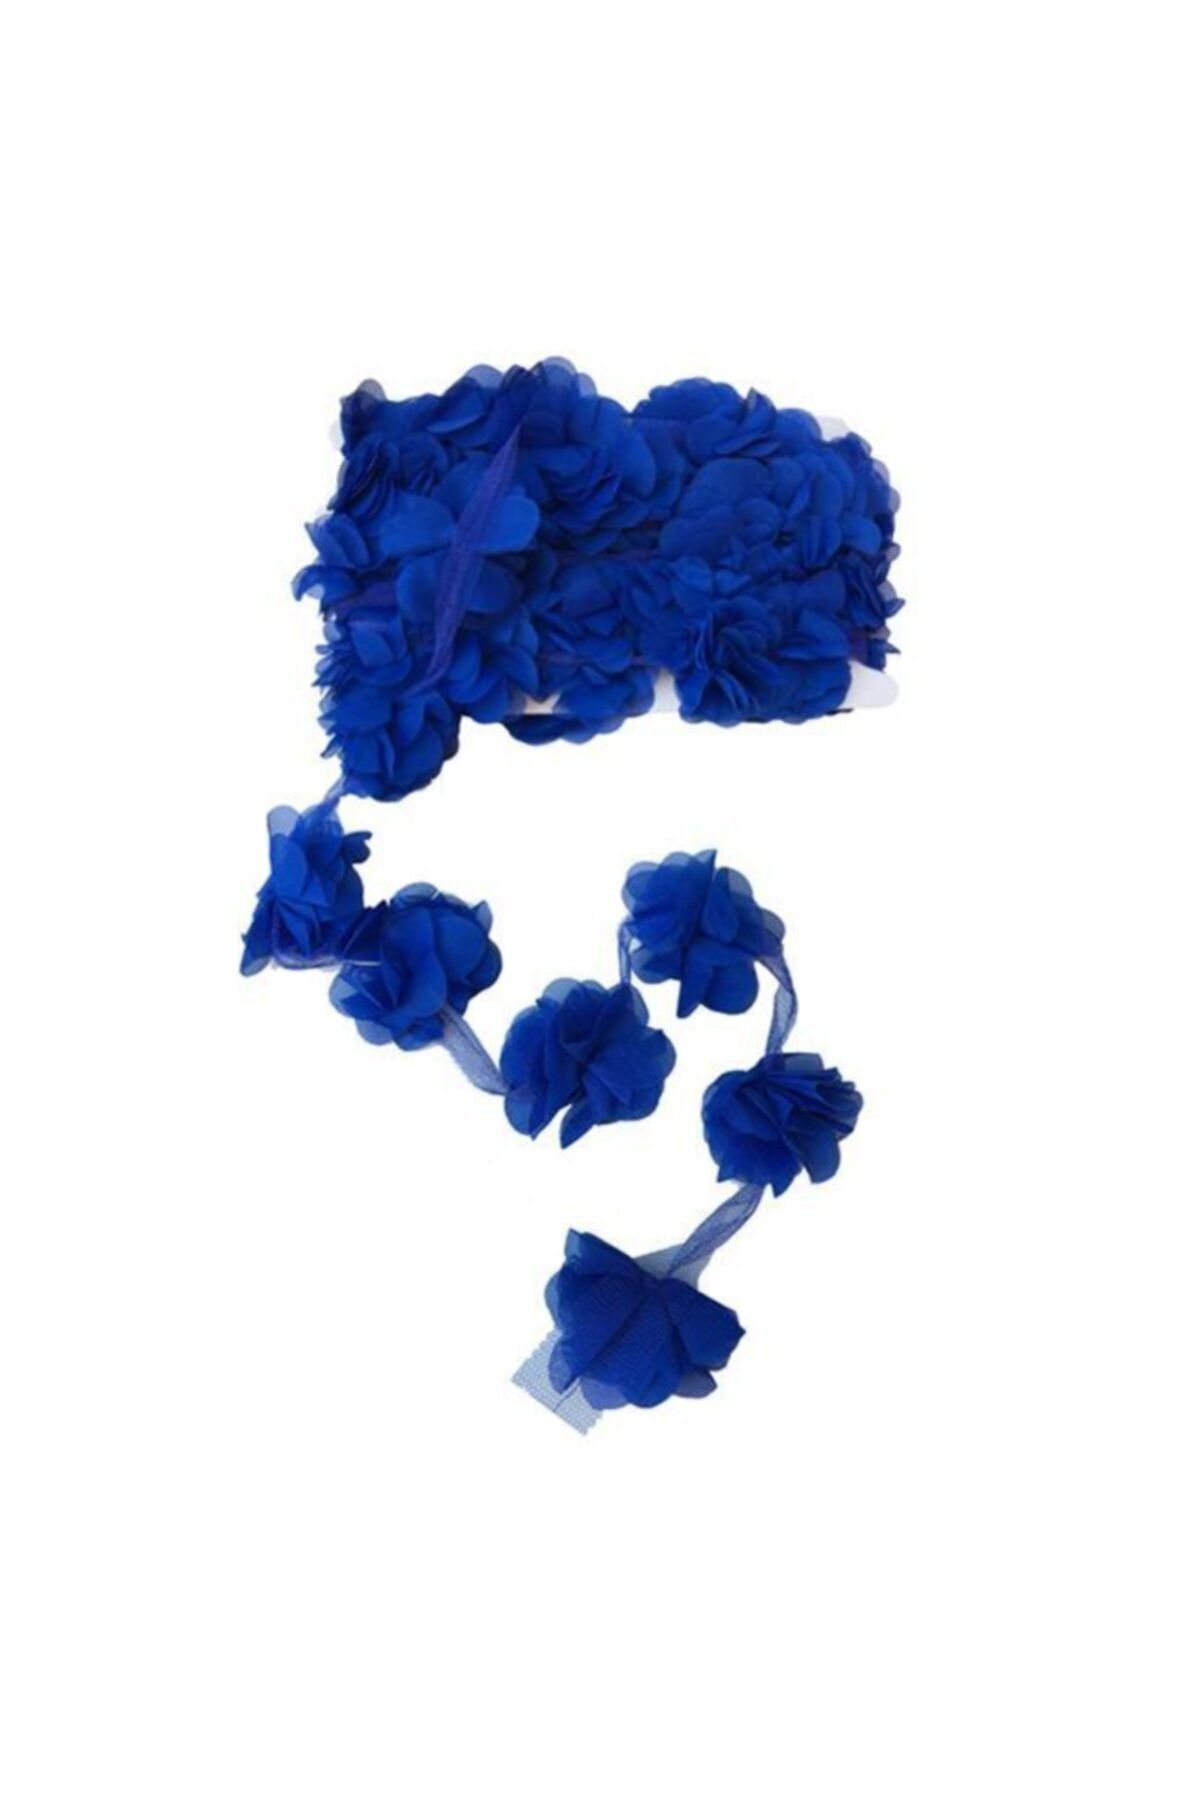 Aker Hediyelik Saks Mavi 1m Gül Lazer Kesim Gül Çiçek El Işi Kenar Süsleme Hobi Lazerle Kesilen Organze Tül Çiçek